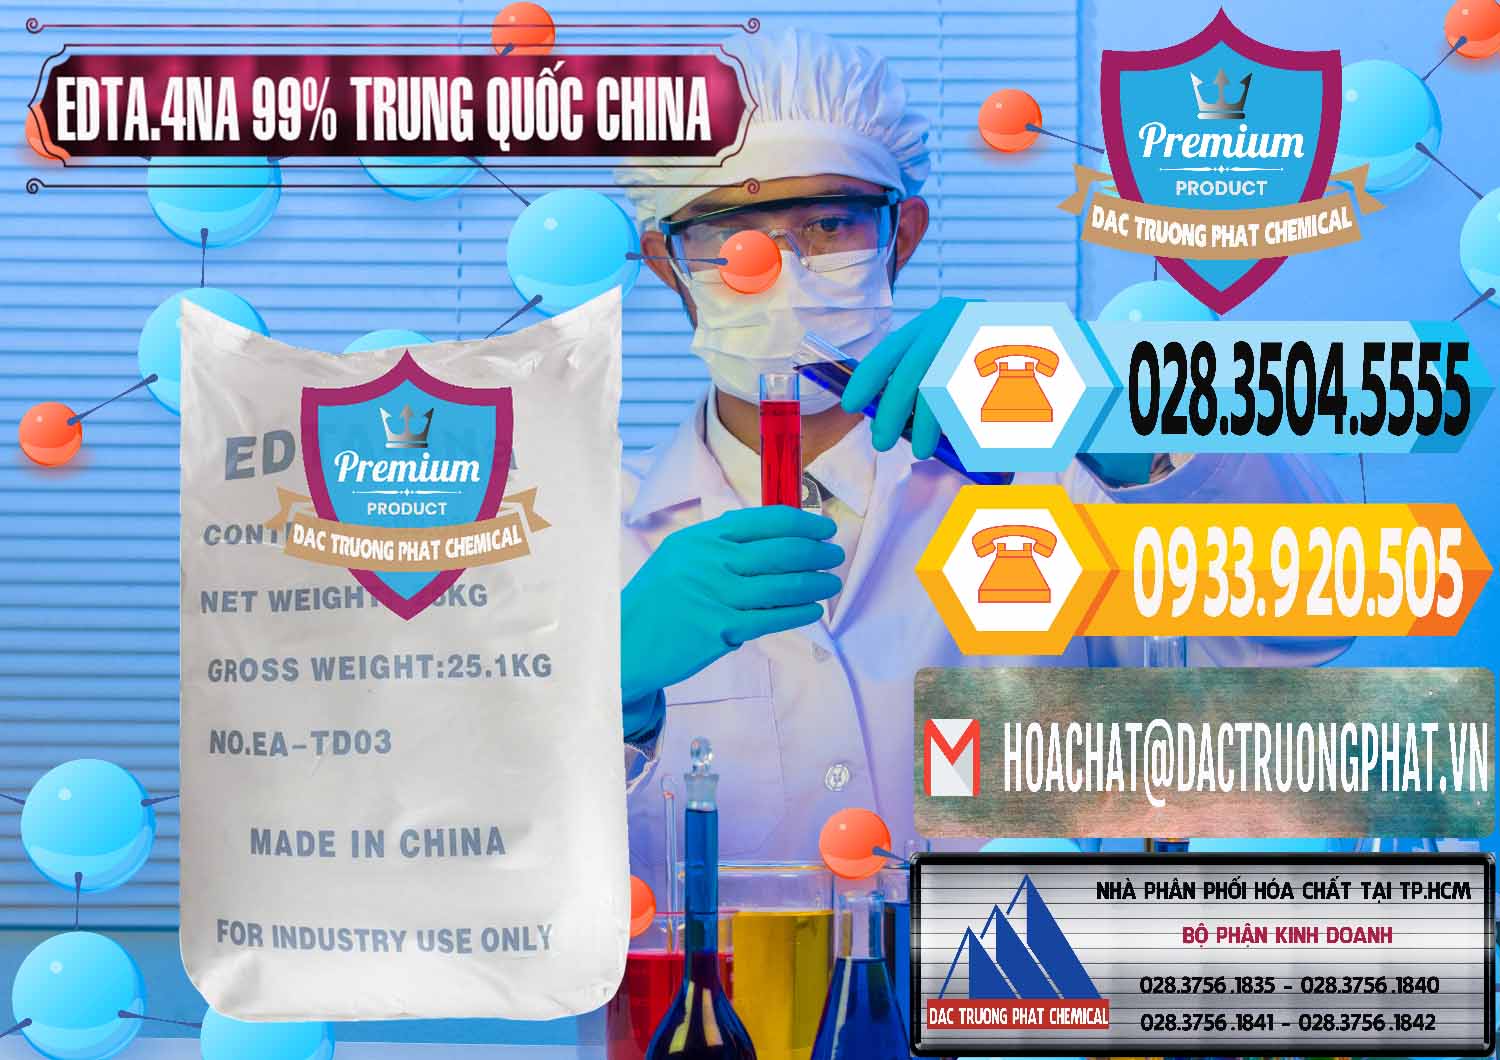 Nơi chuyên phân phối - bán EDTA.4NA - EDTA Muối 99% Trung Quốc China - 0292 - Nhà cung cấp ( nhập khẩu ) hóa chất tại TP.HCM - hoachattayrua.net